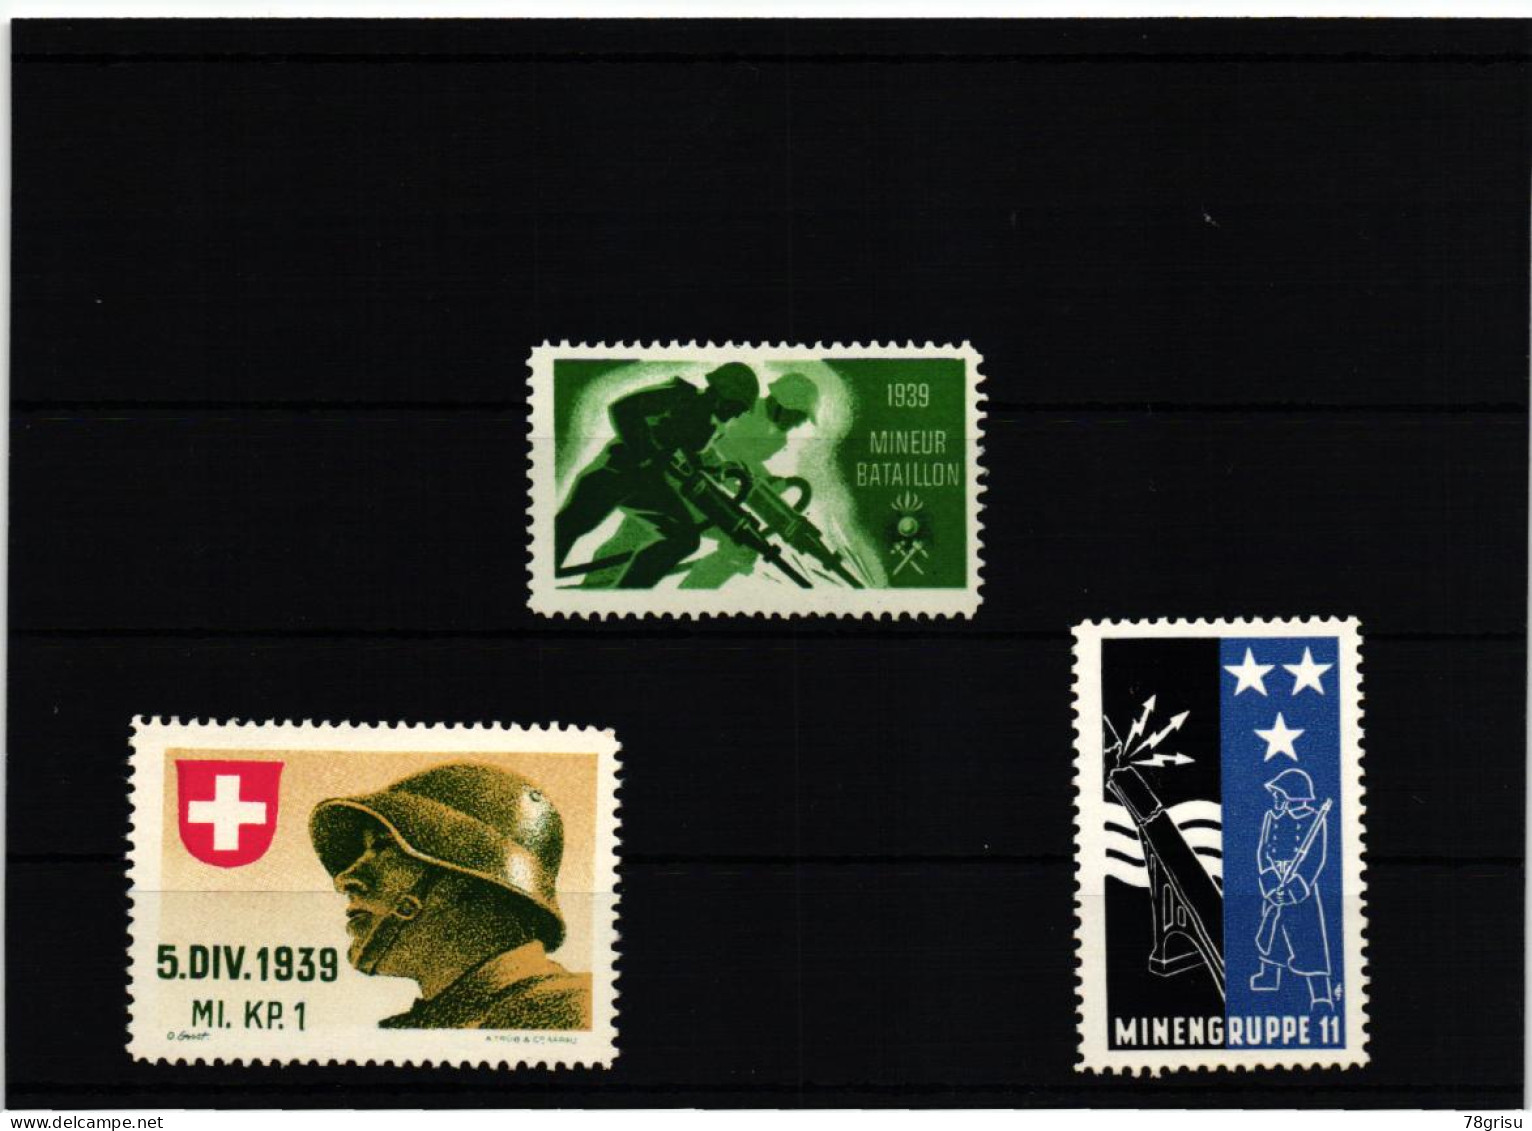 Schweiz Soldatenmarken, MINIEUR BATAILLON; MINENGRUPPE; MI. KP. 1939 - Vignettes